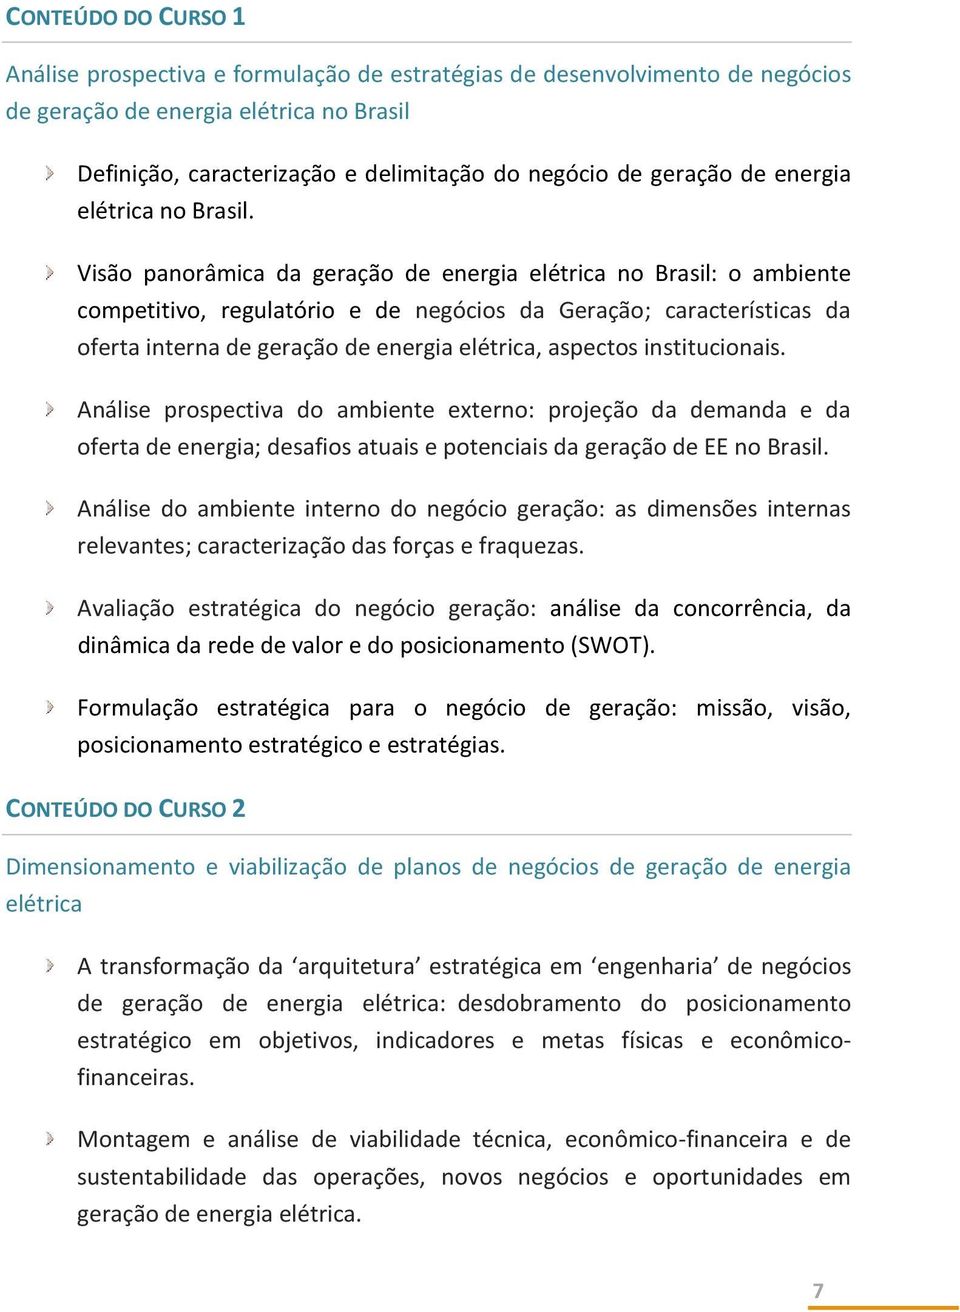 Visão panorâmica da geração de energia elétrica no Brasil: o ambiente competitivo, regulatório e de negócios da Geração; características da oferta interna de geração de energia elétrica, aspectos